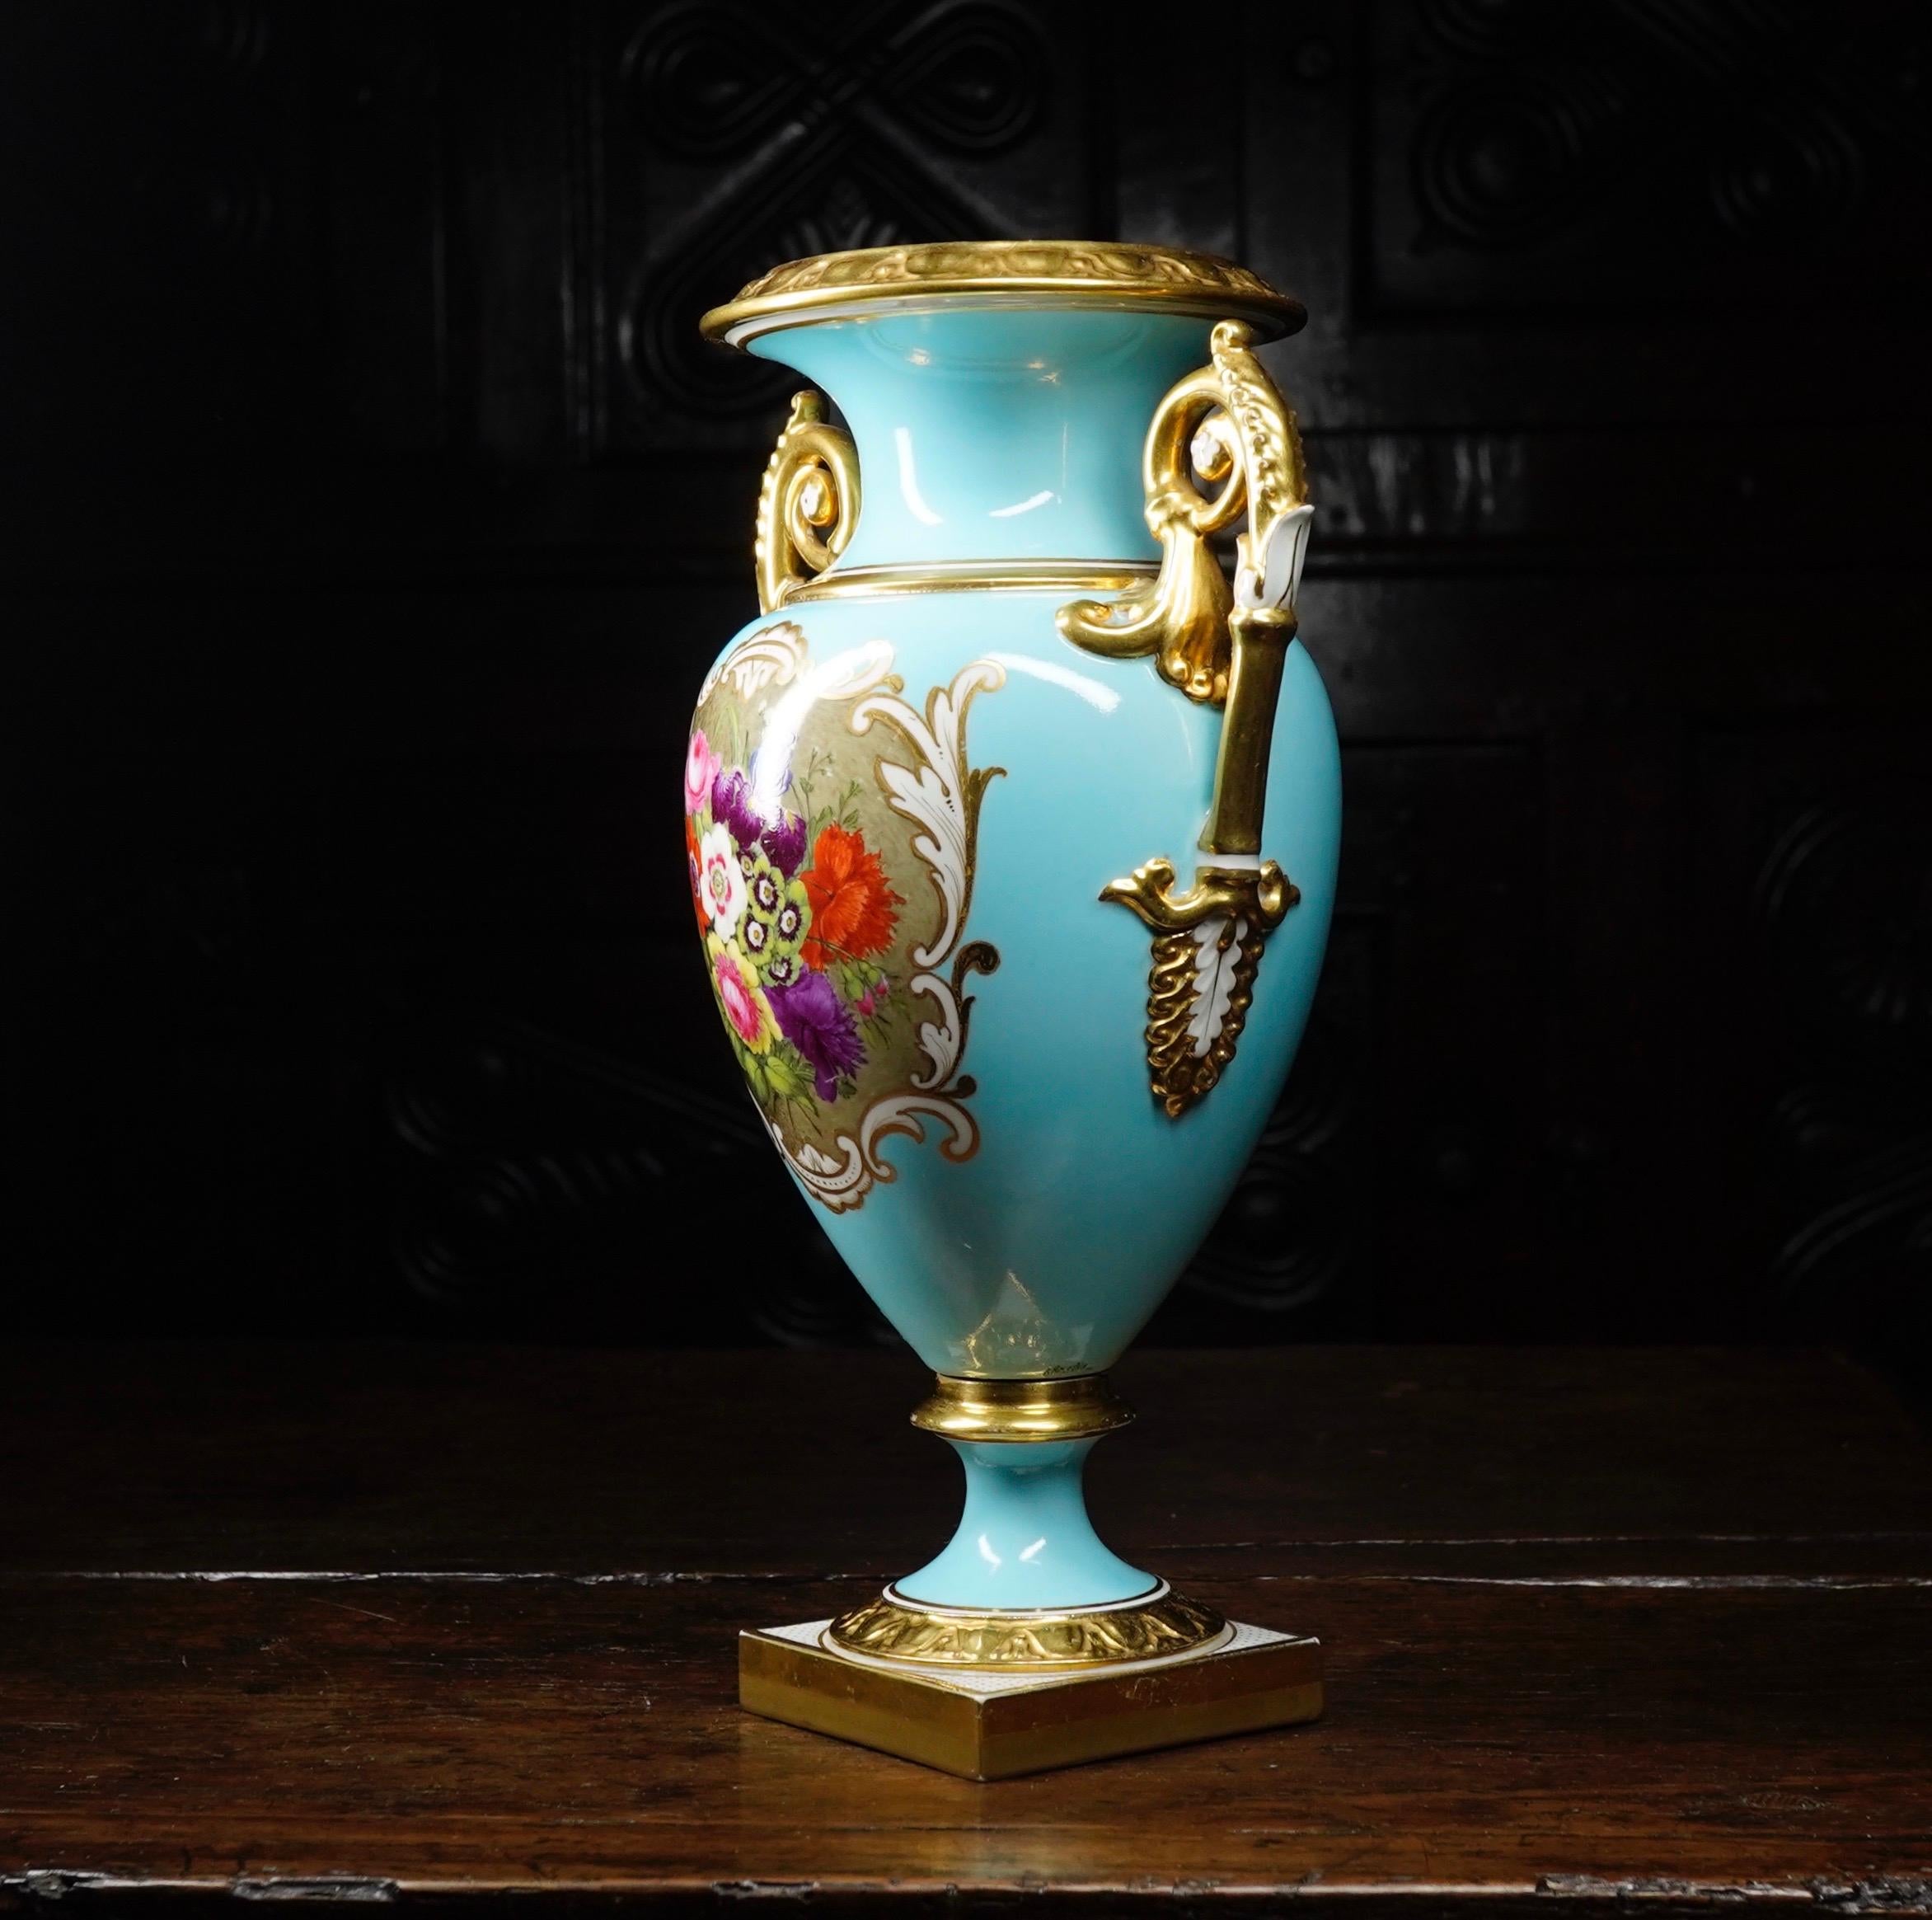 duck egg blue vases